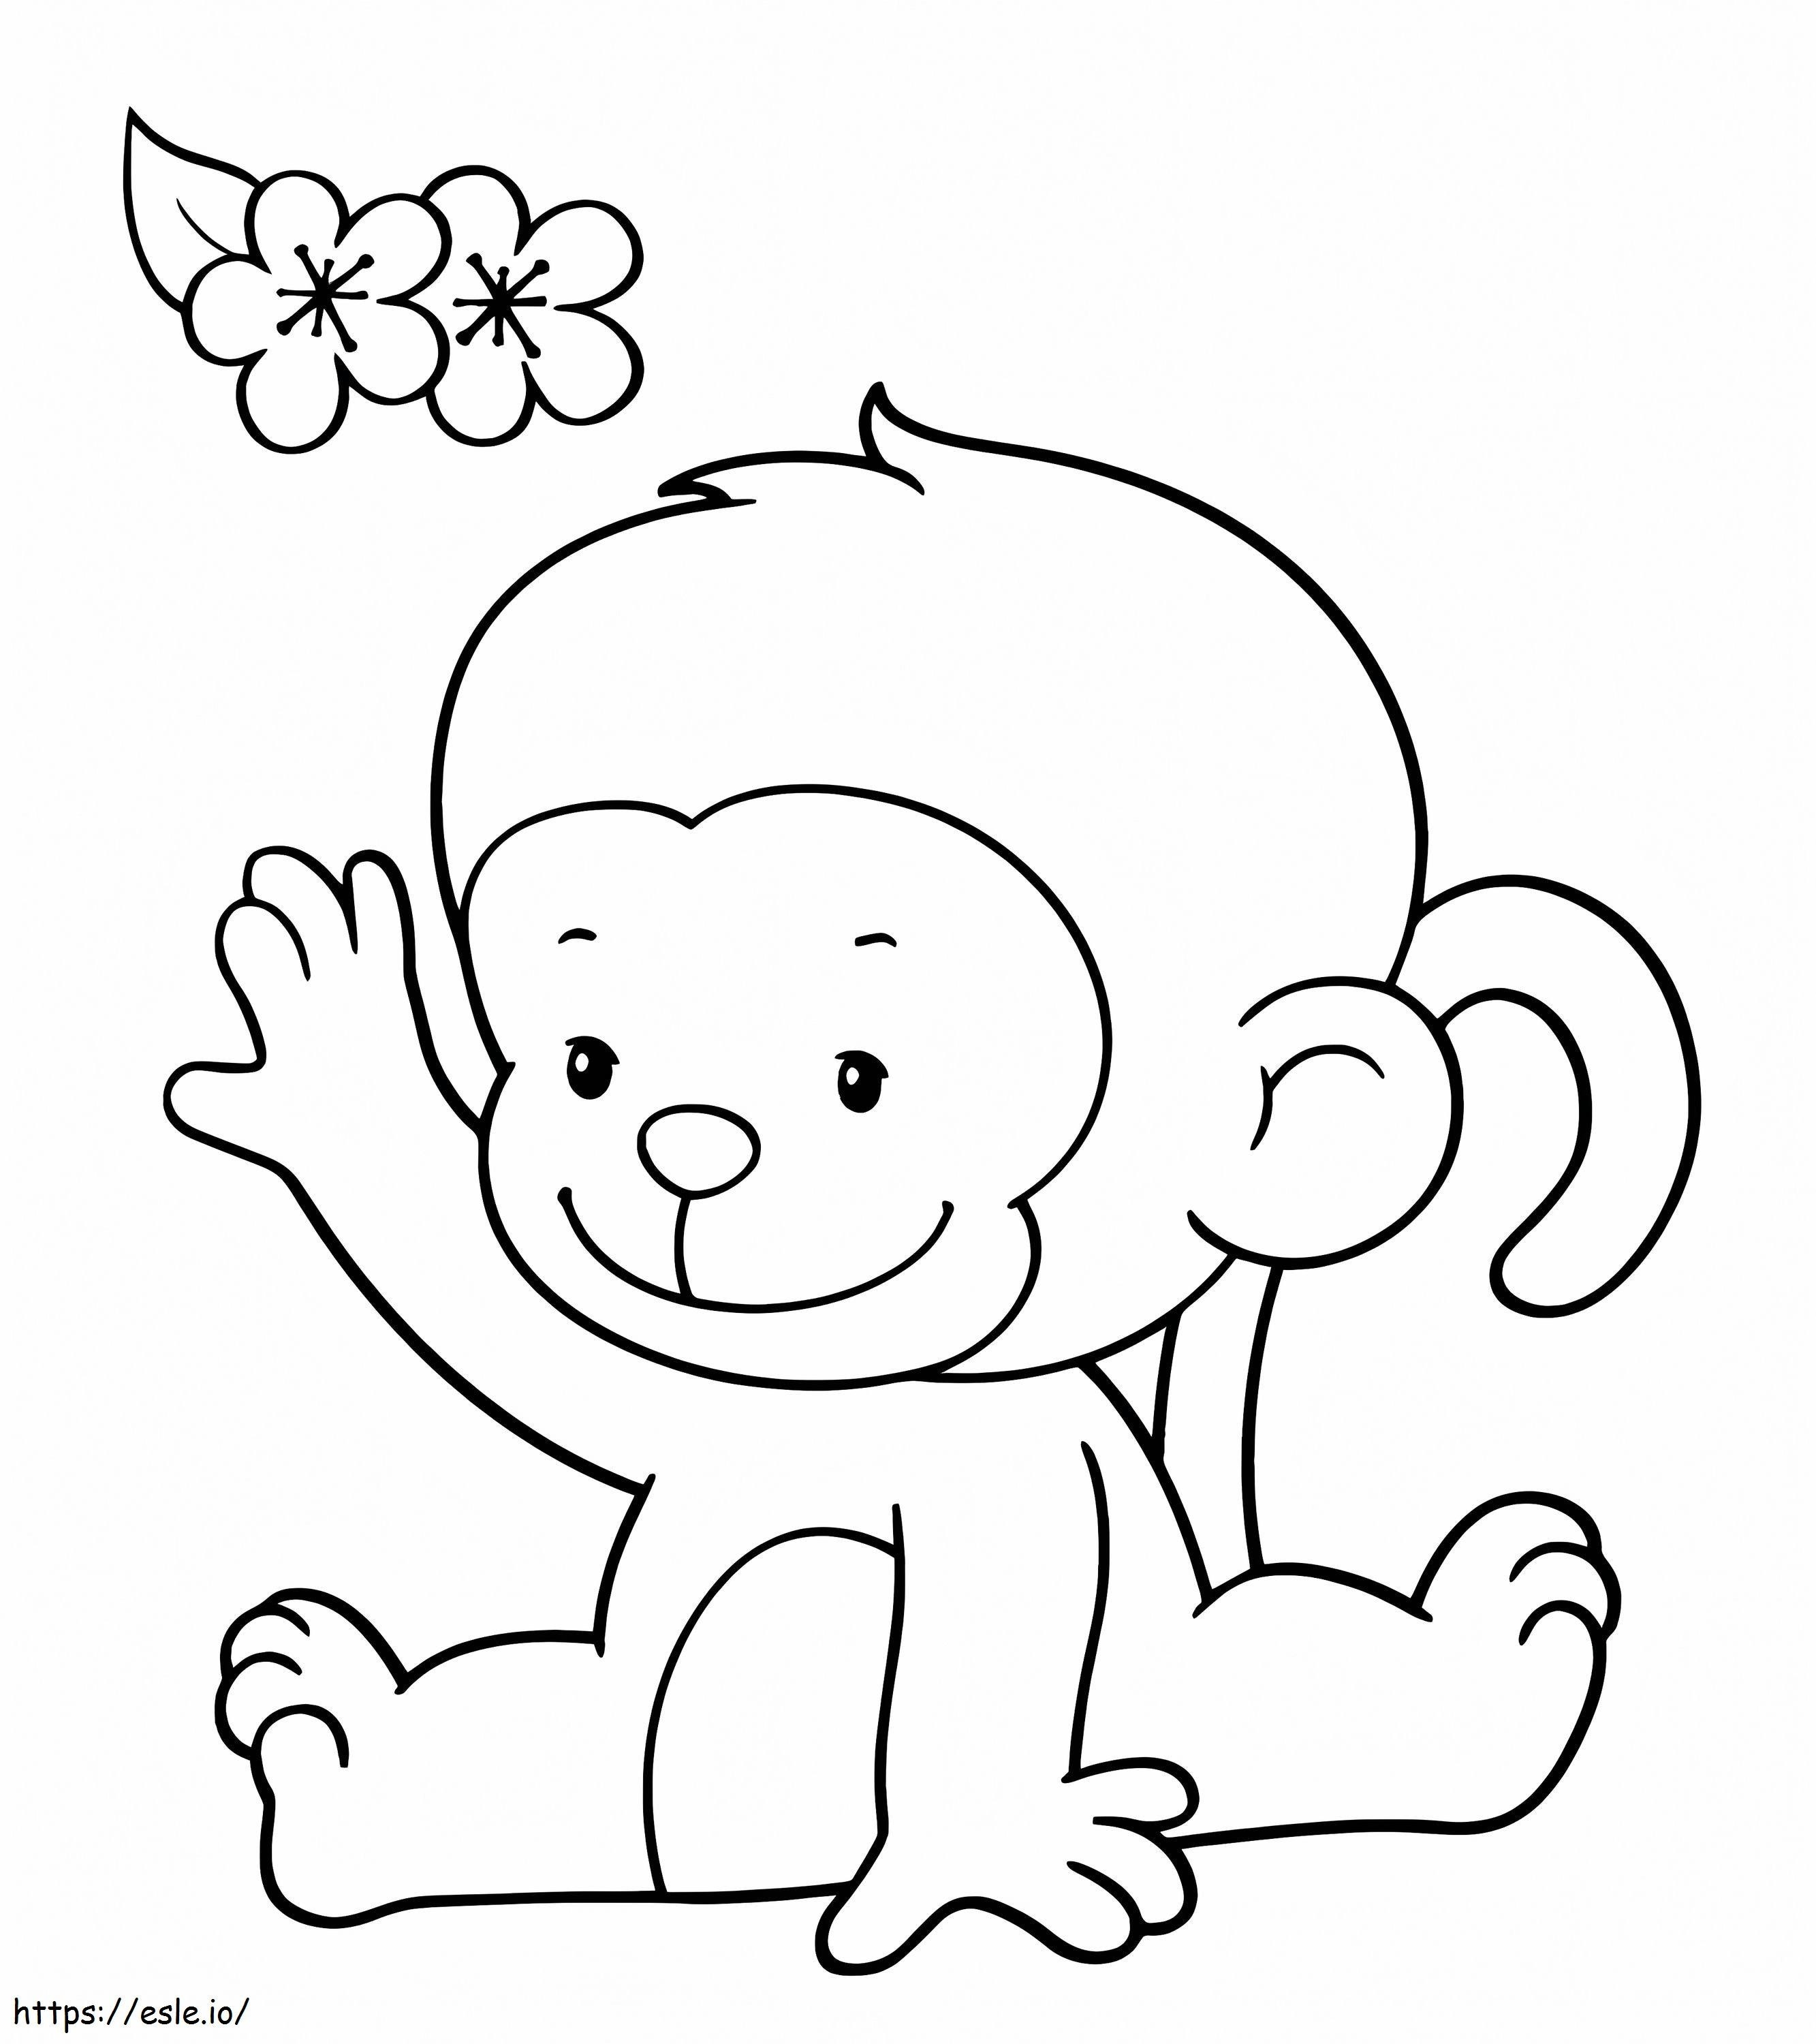 Maimuta Si Floarea de colorat